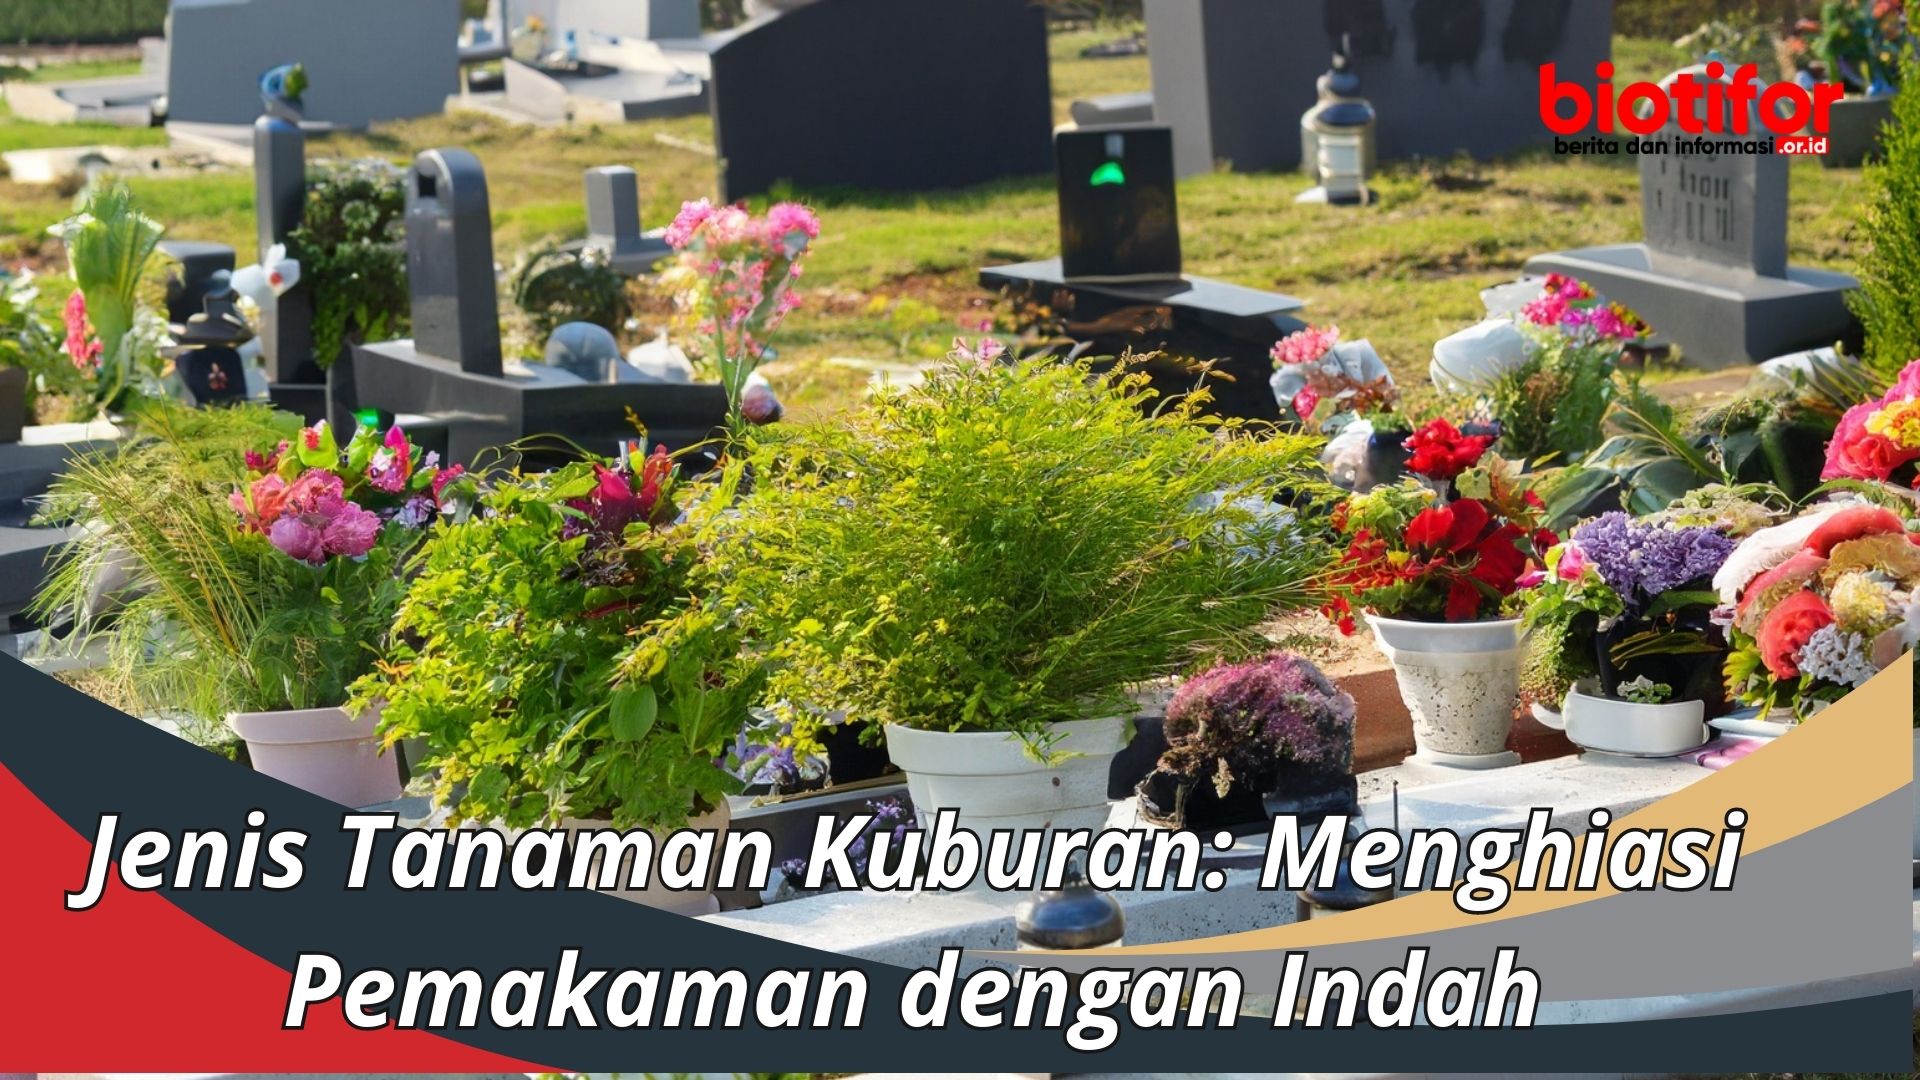 Jenis Tanaman Kuburan: Menghiasi Pemakaman dengan Indah